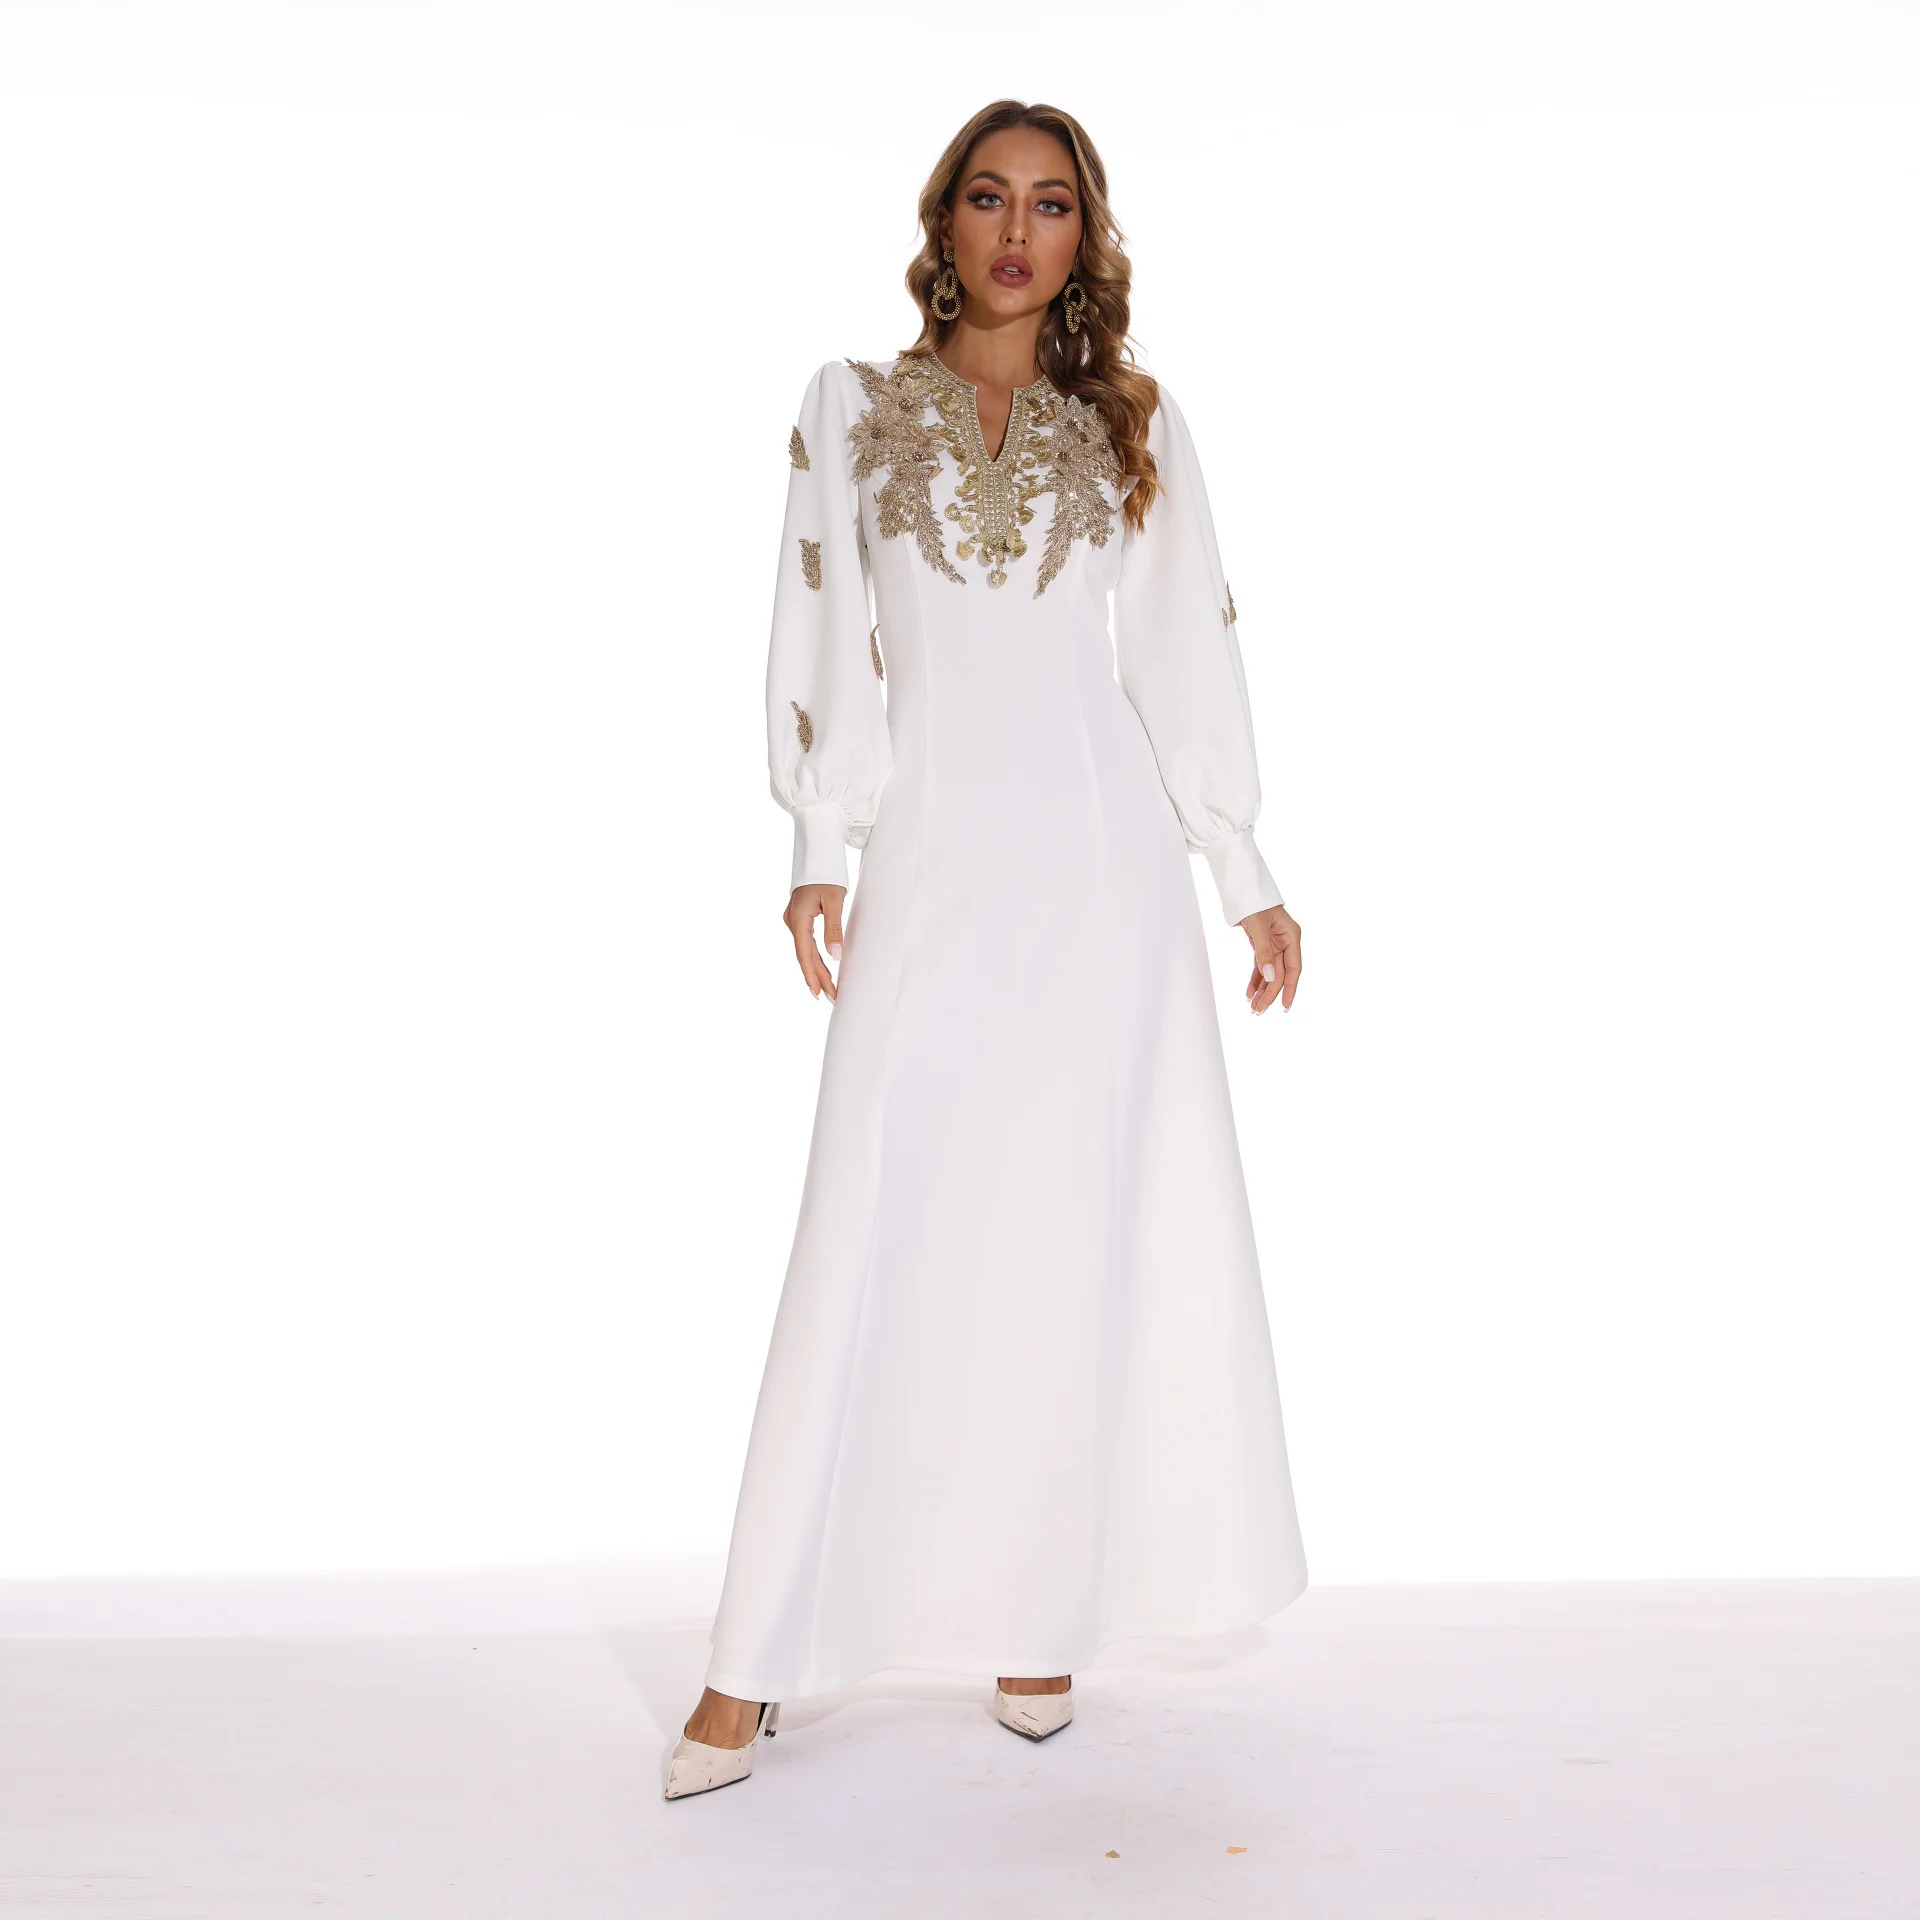 New Muslim Arab Slim Women Fashion Embroidery White Long